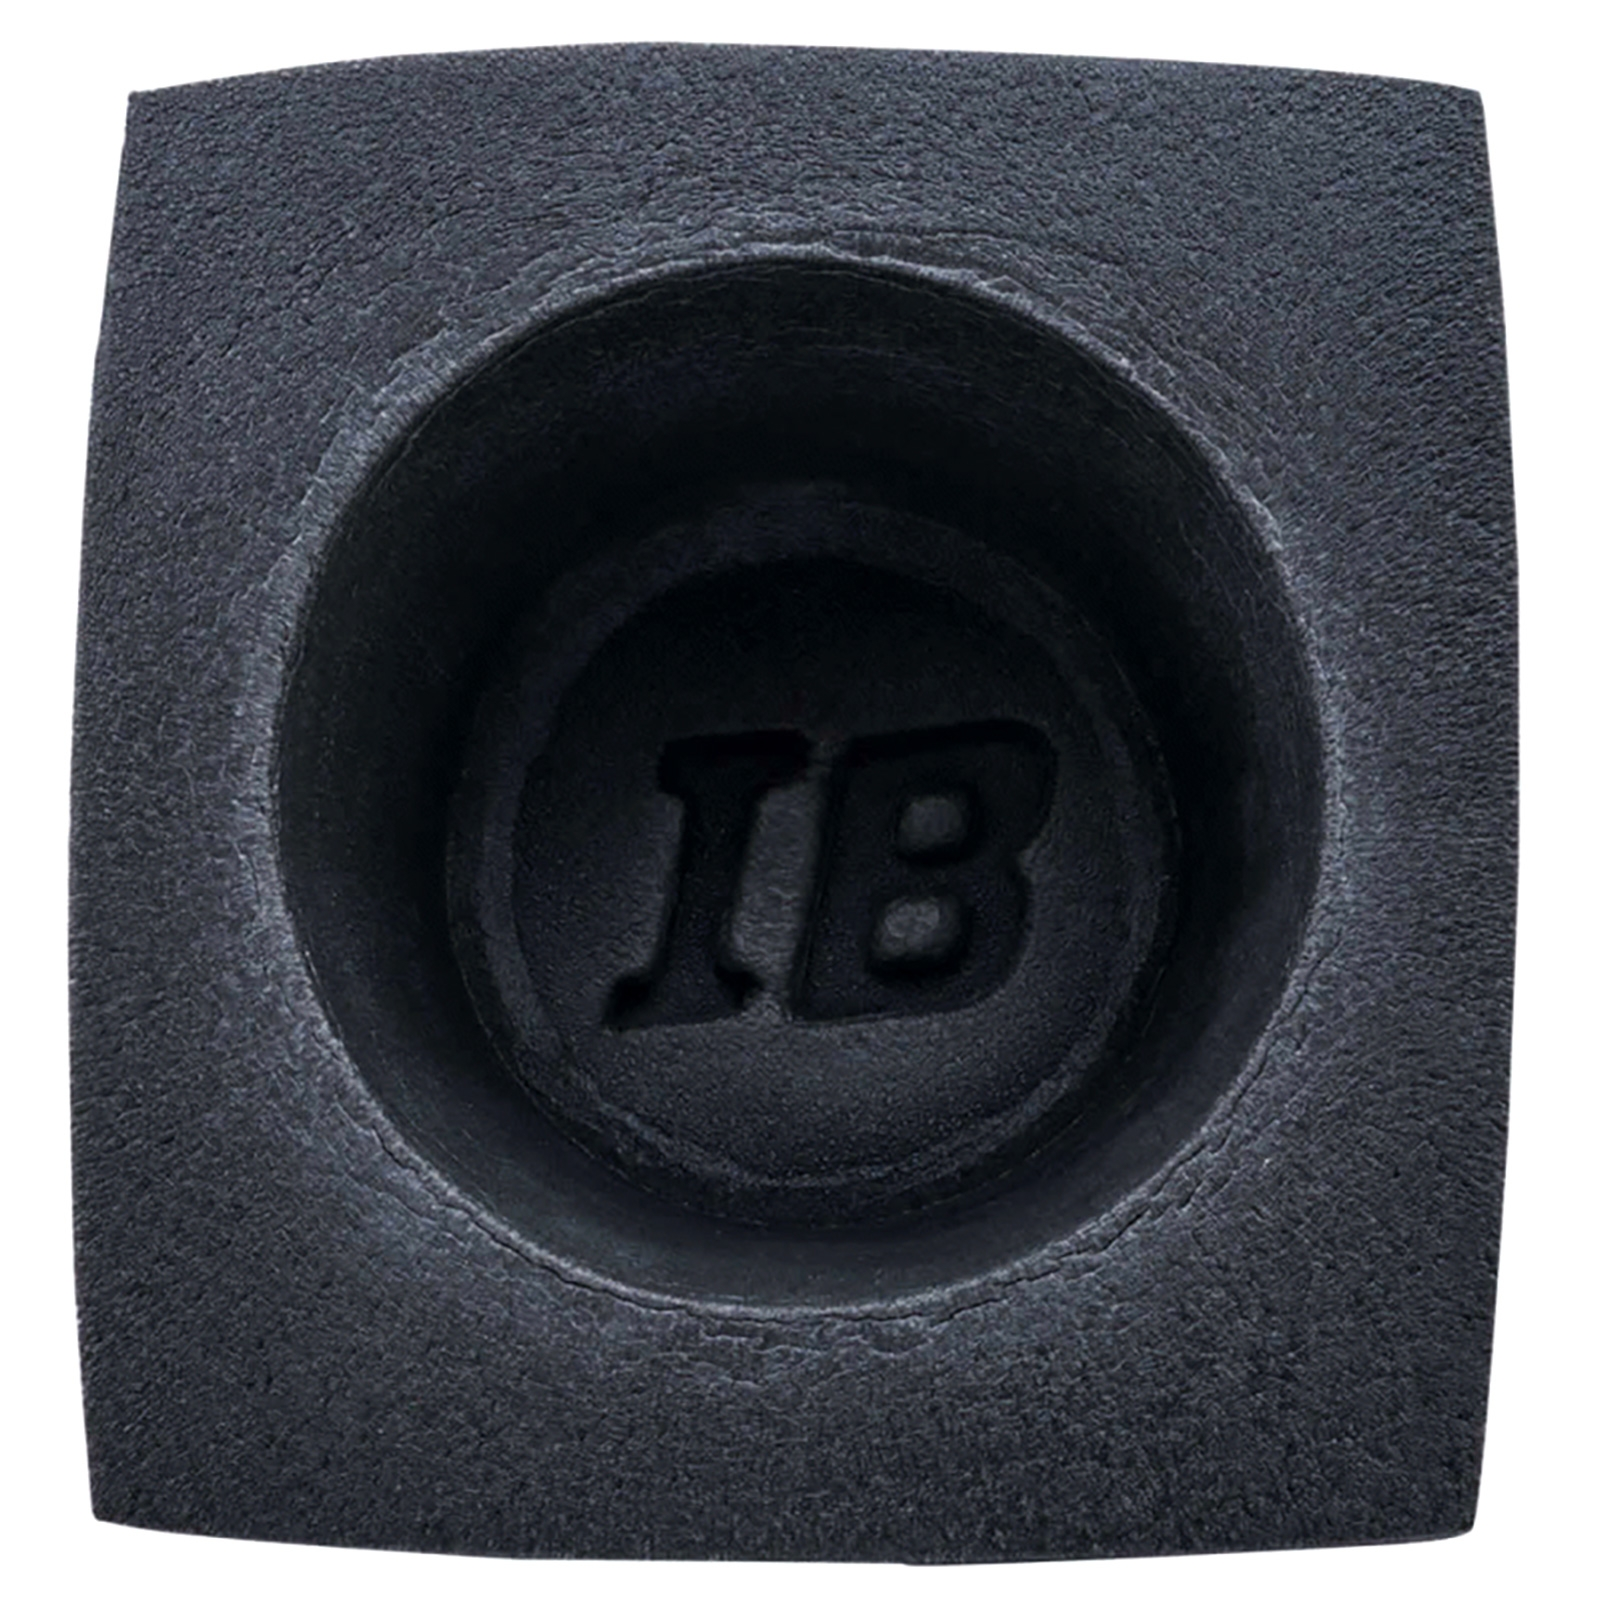 METRA IBBAF65 rundes 15cm Lautsprecher-Schutzgehäuse